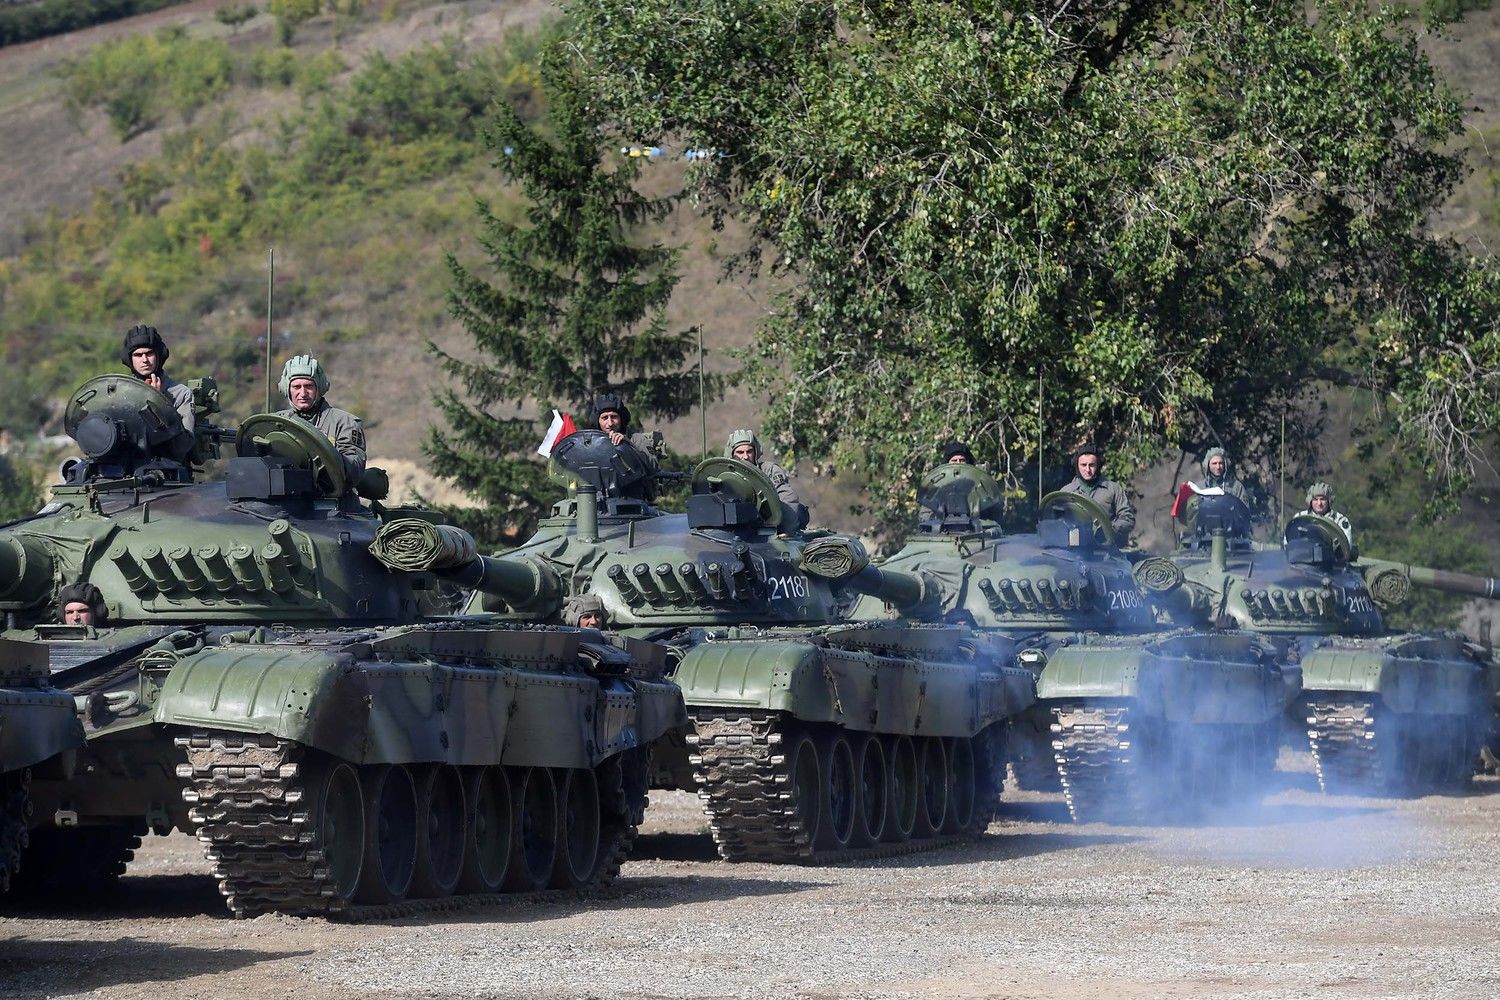  Сербия угрожает ввести армию в Косово через 24 часа: Вучич выдвинул ультиматум НАТО